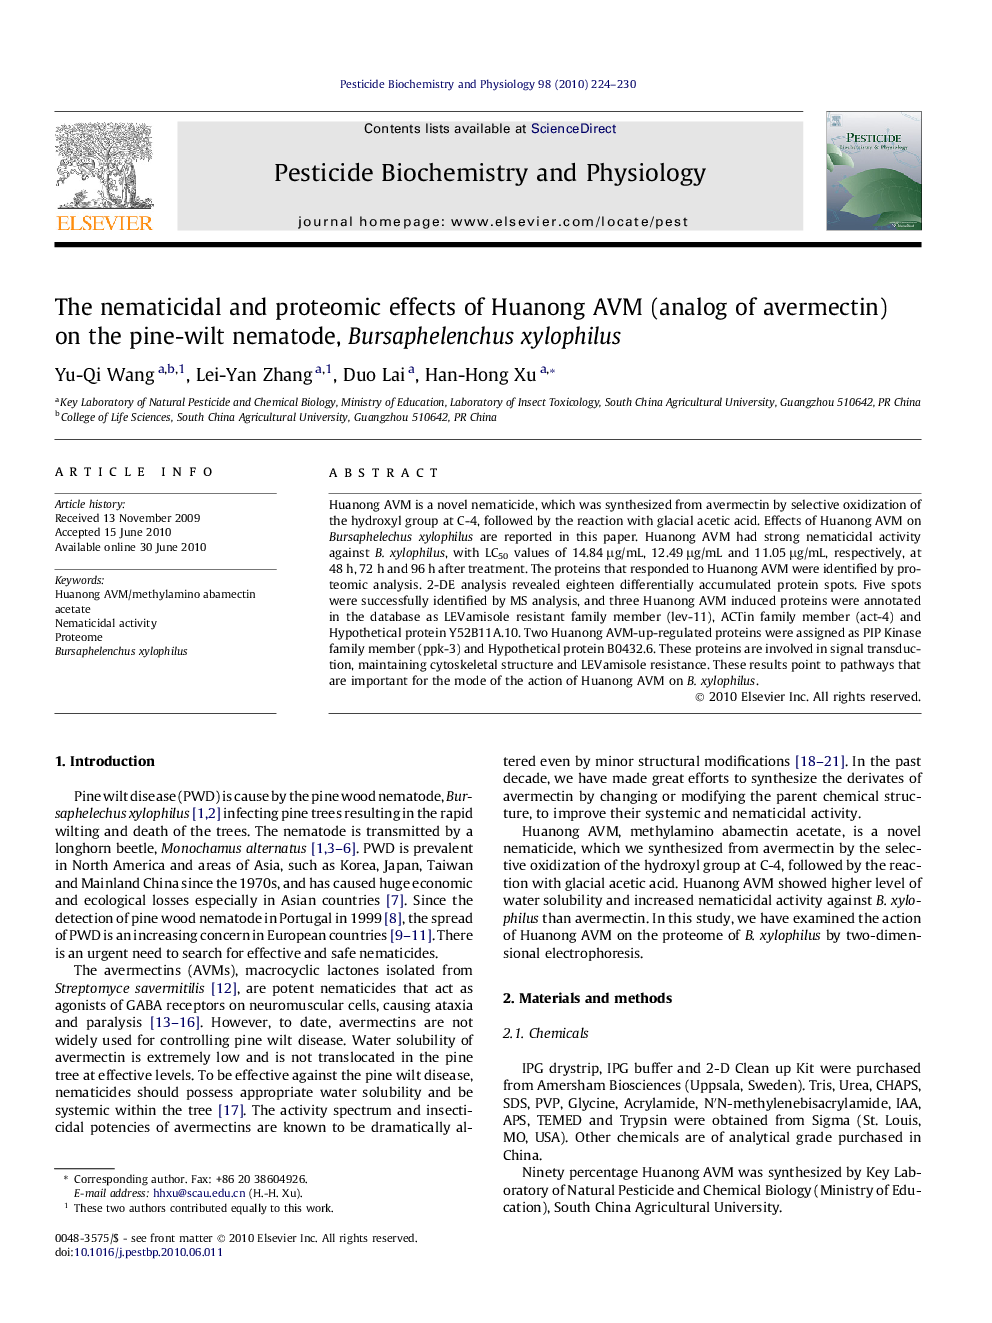 The nematicidal and proteomic effects of Huanong AVM (analog of avermectin) on the pine-wilt nematode, Bursaphelenchus xylophilus